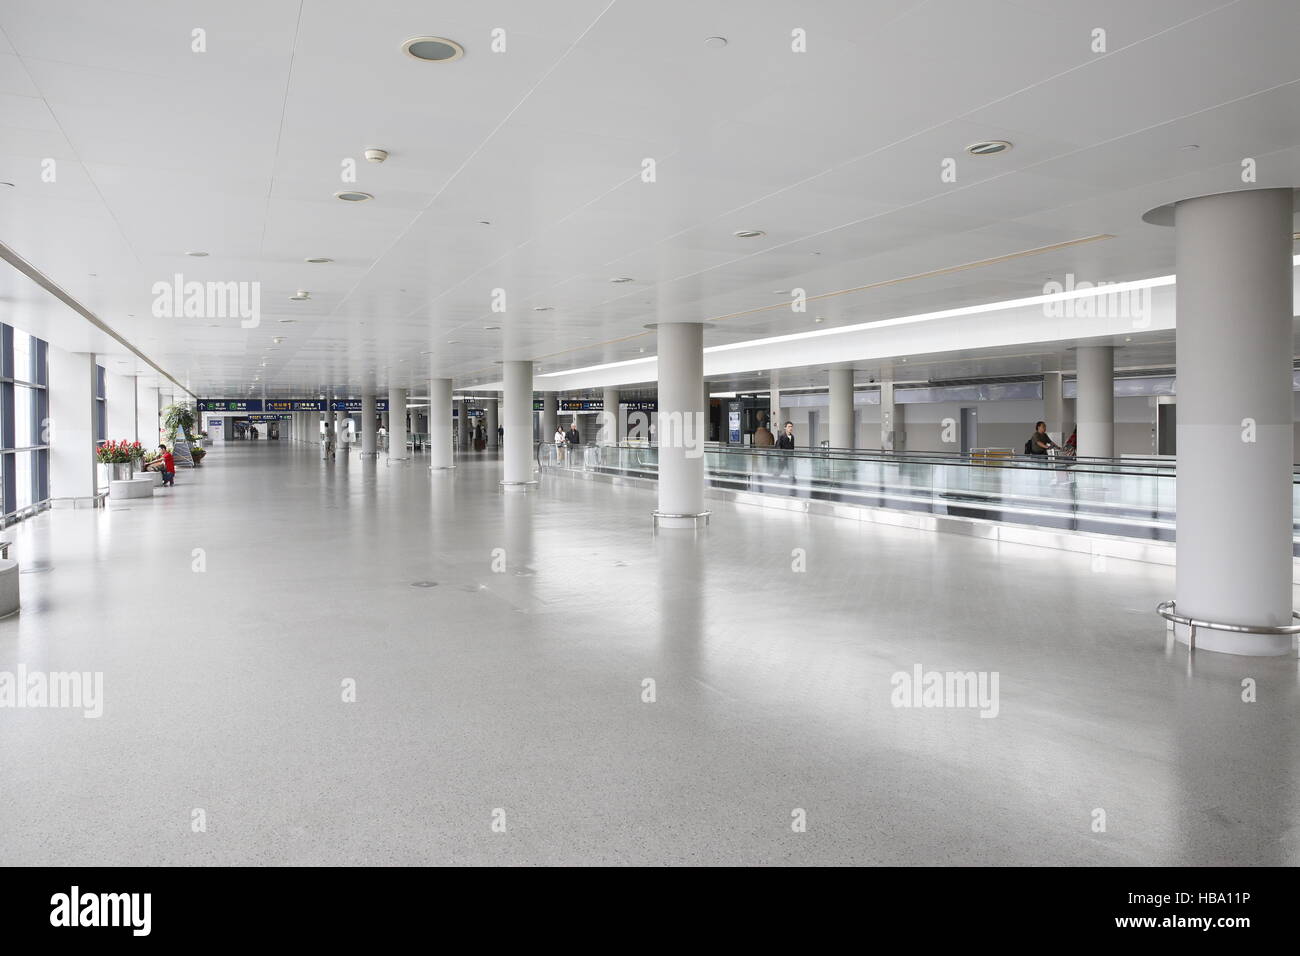 El aeropuerto Pudong de Shanghai China Foto de stock